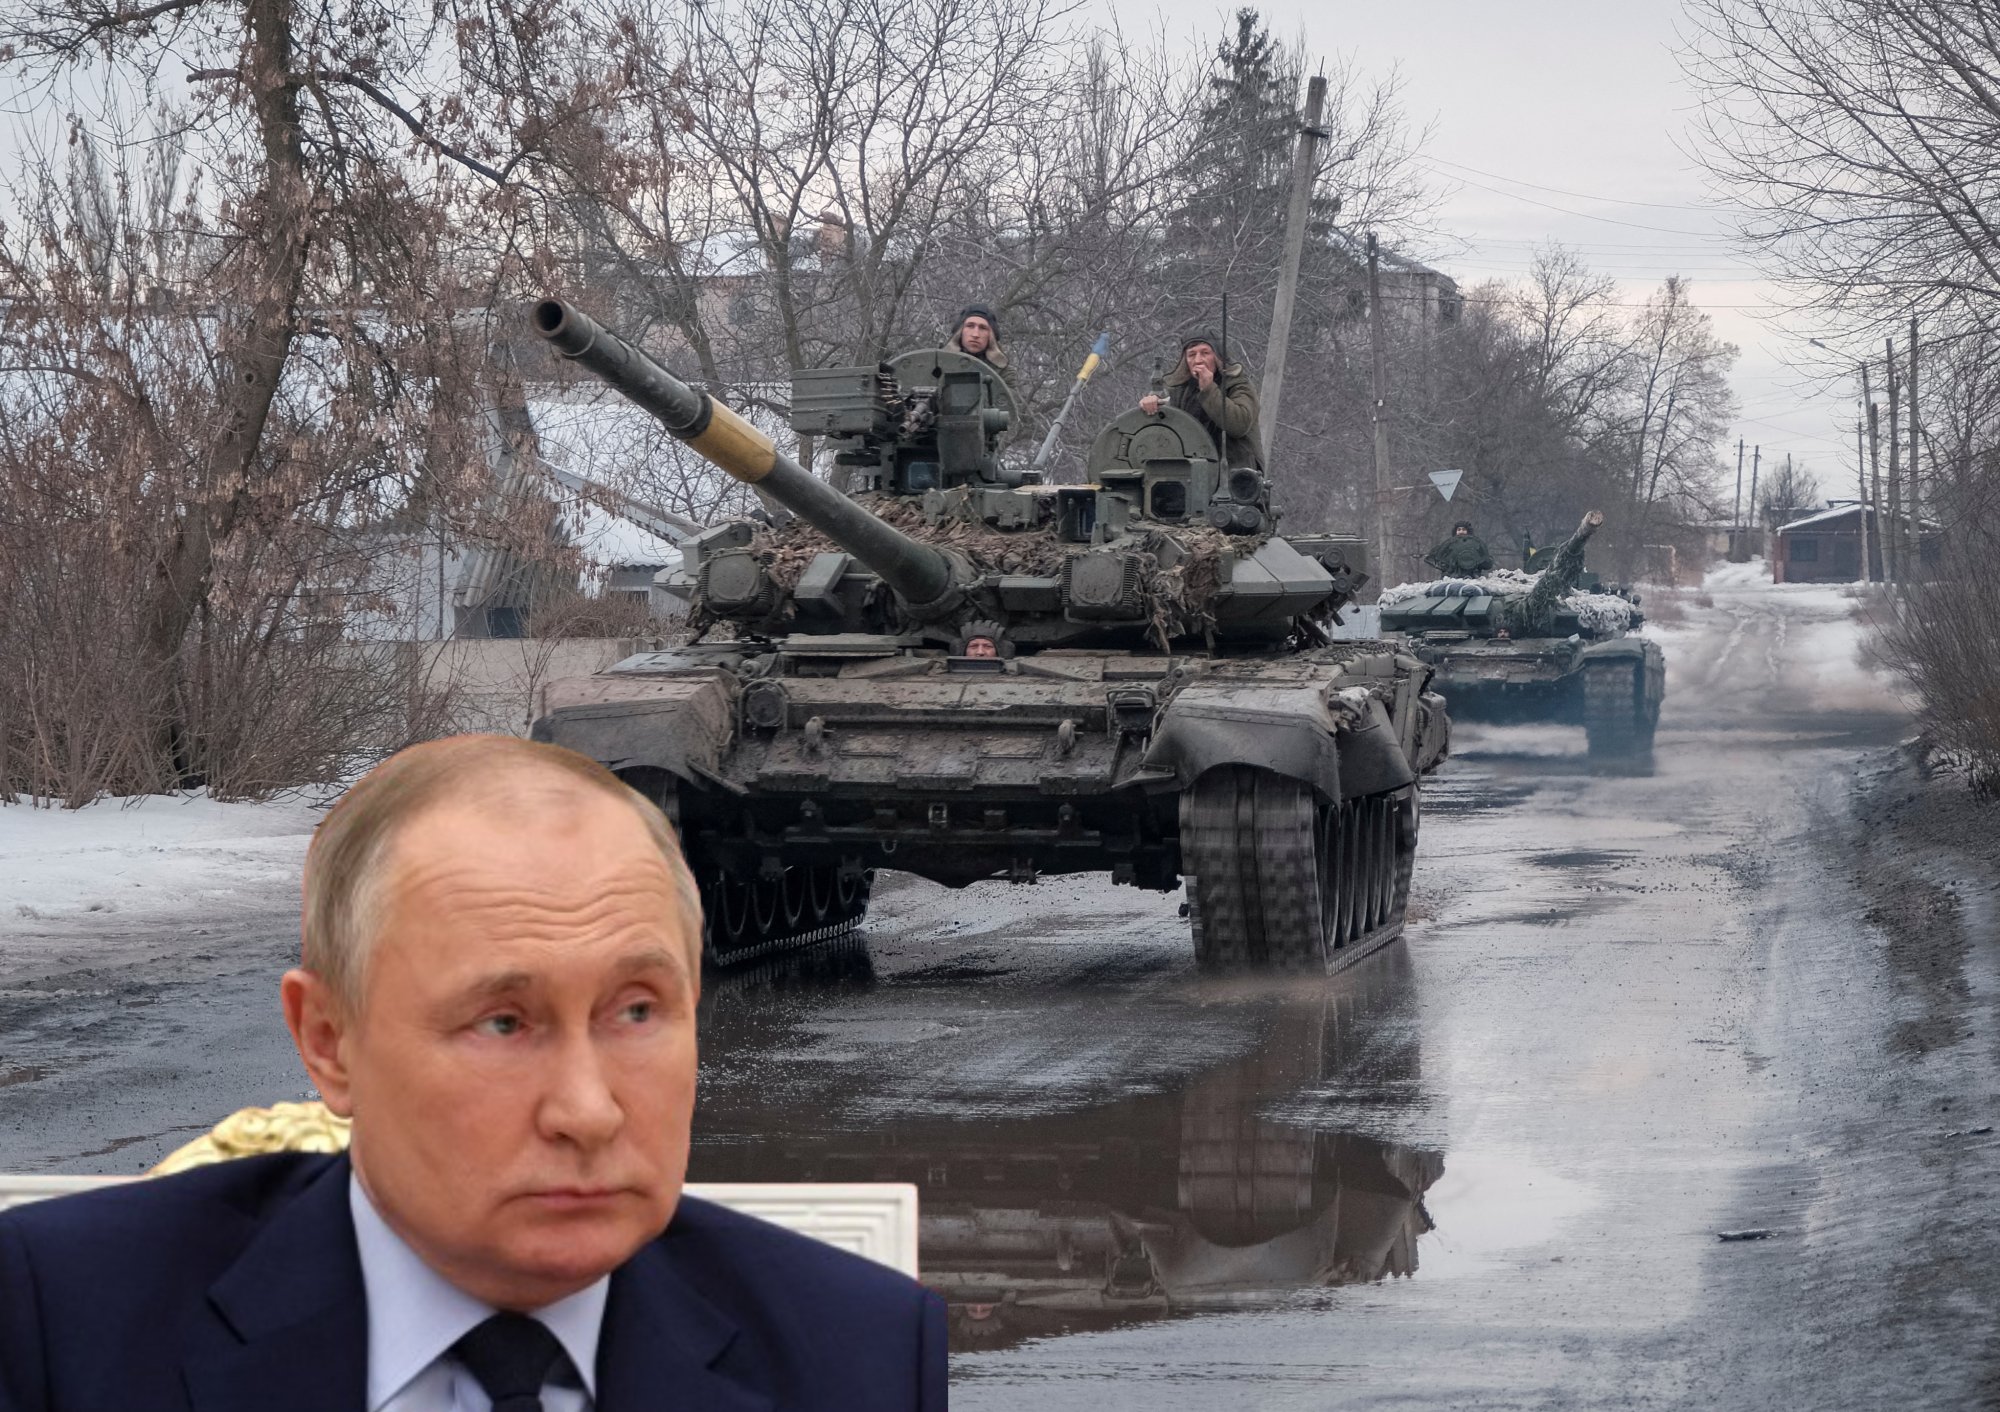 Ο κρυφός άσσος στο μανίκι του Πούτιν - Πώς καταφέρνει να τροφοδοτεί την πολεμική του μηχανή